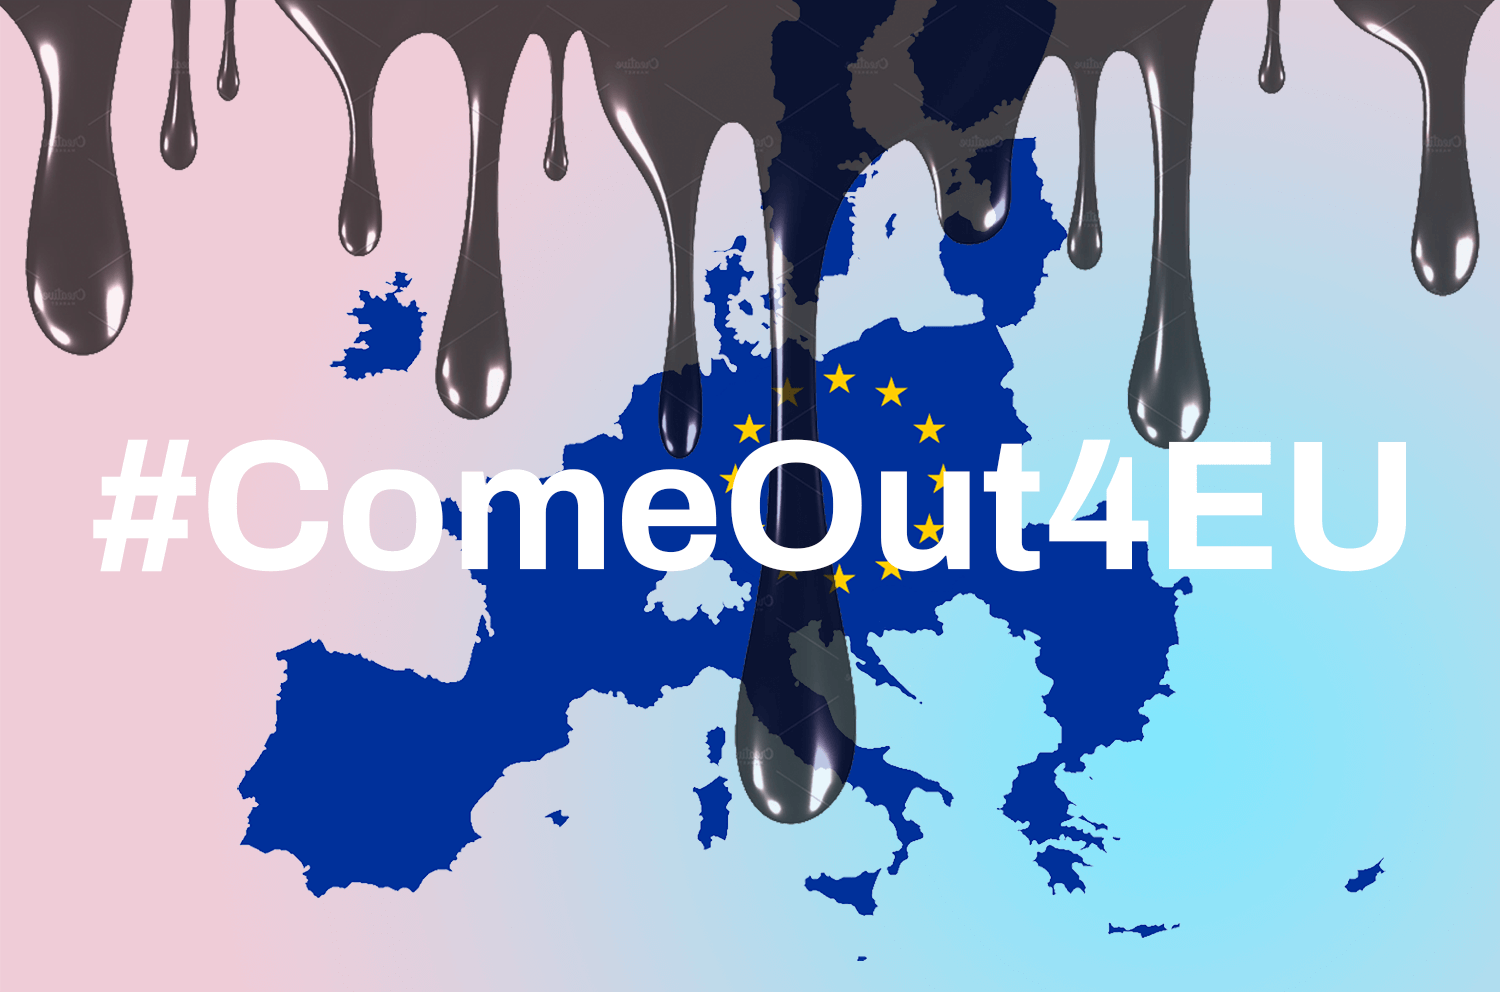 Elezioni Europee Campagna Ilga ComeOut4EU